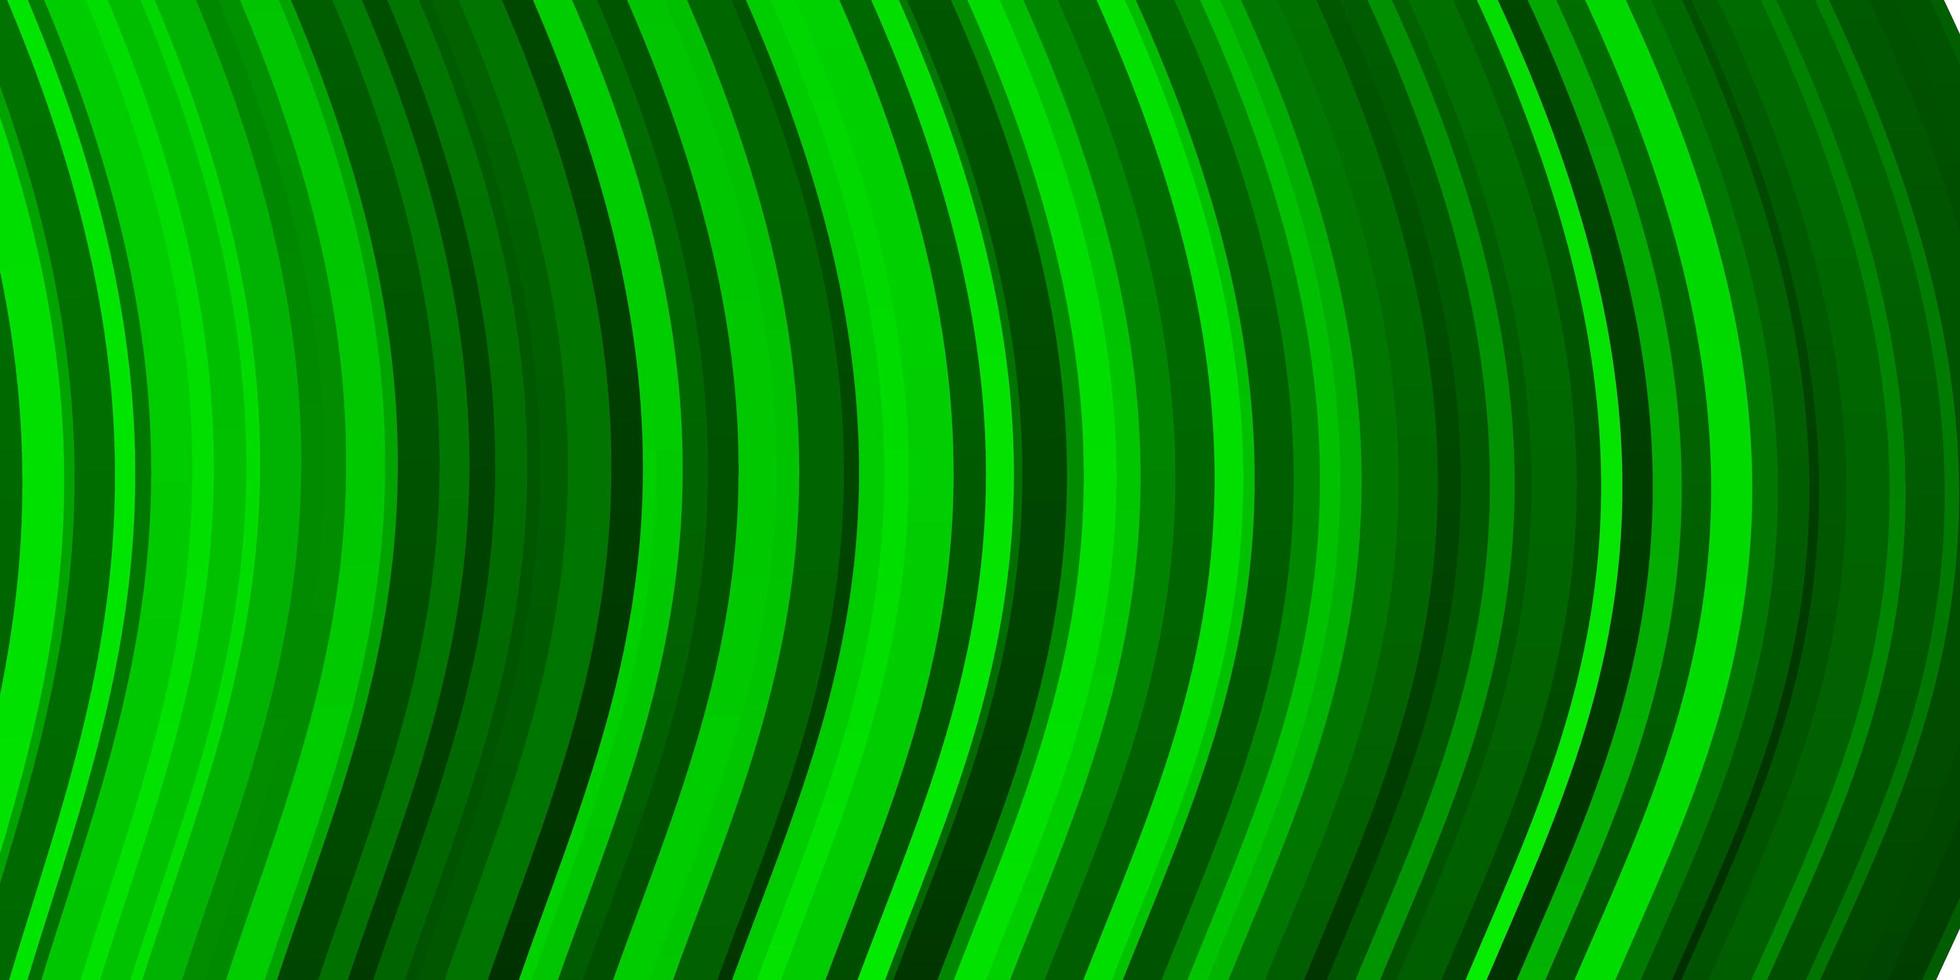 sfondo vettoriale verde chiaro con linee piegate.